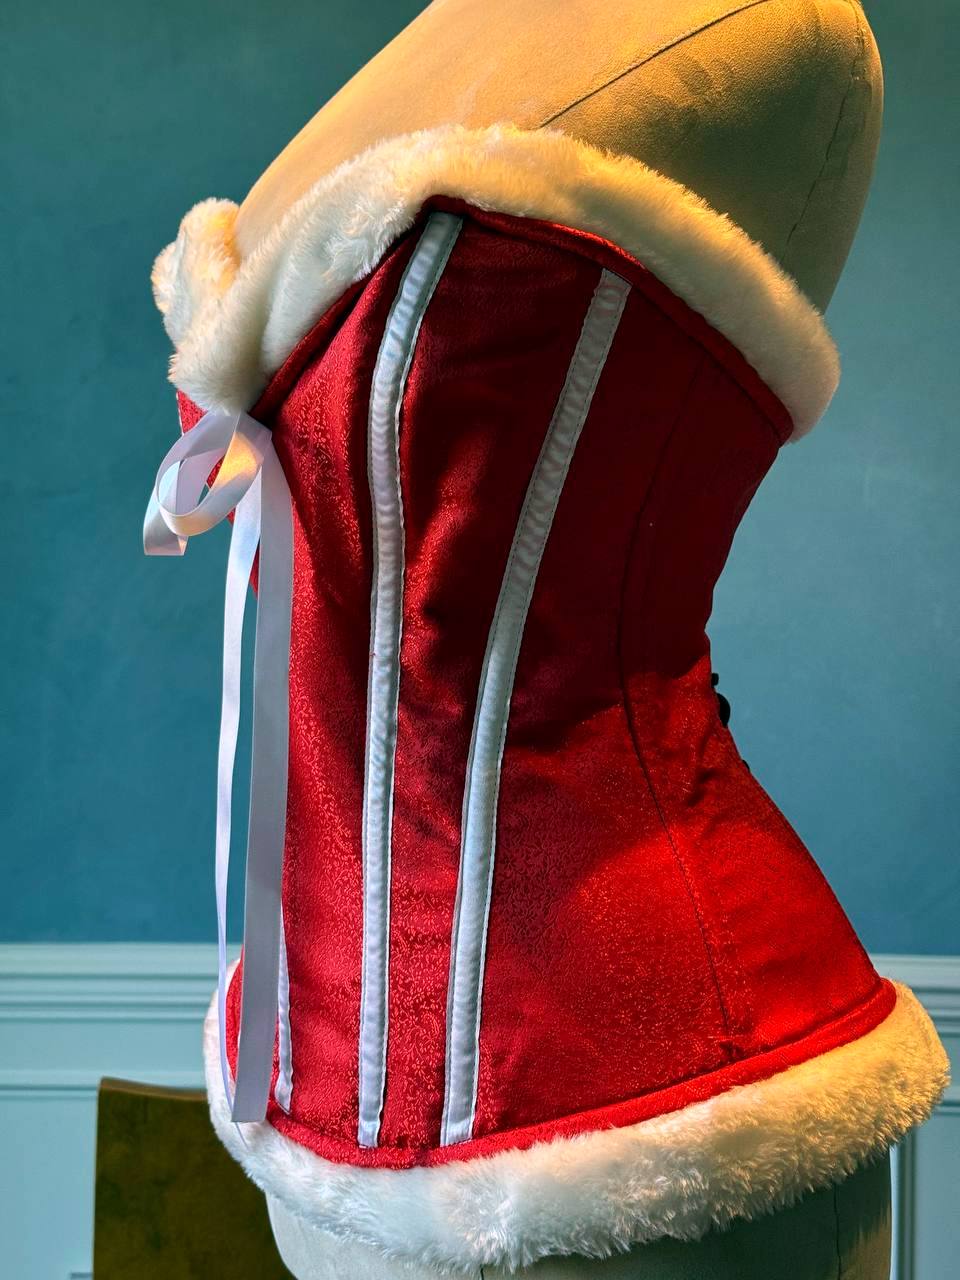 
                  
                    Corset rosso in raso con ossa bianche e pelliccia, un corsetto di Natale di Babbo Natale accessibile. Il corsetto è realizzato personalmente secondo le tue misure.
                  
                